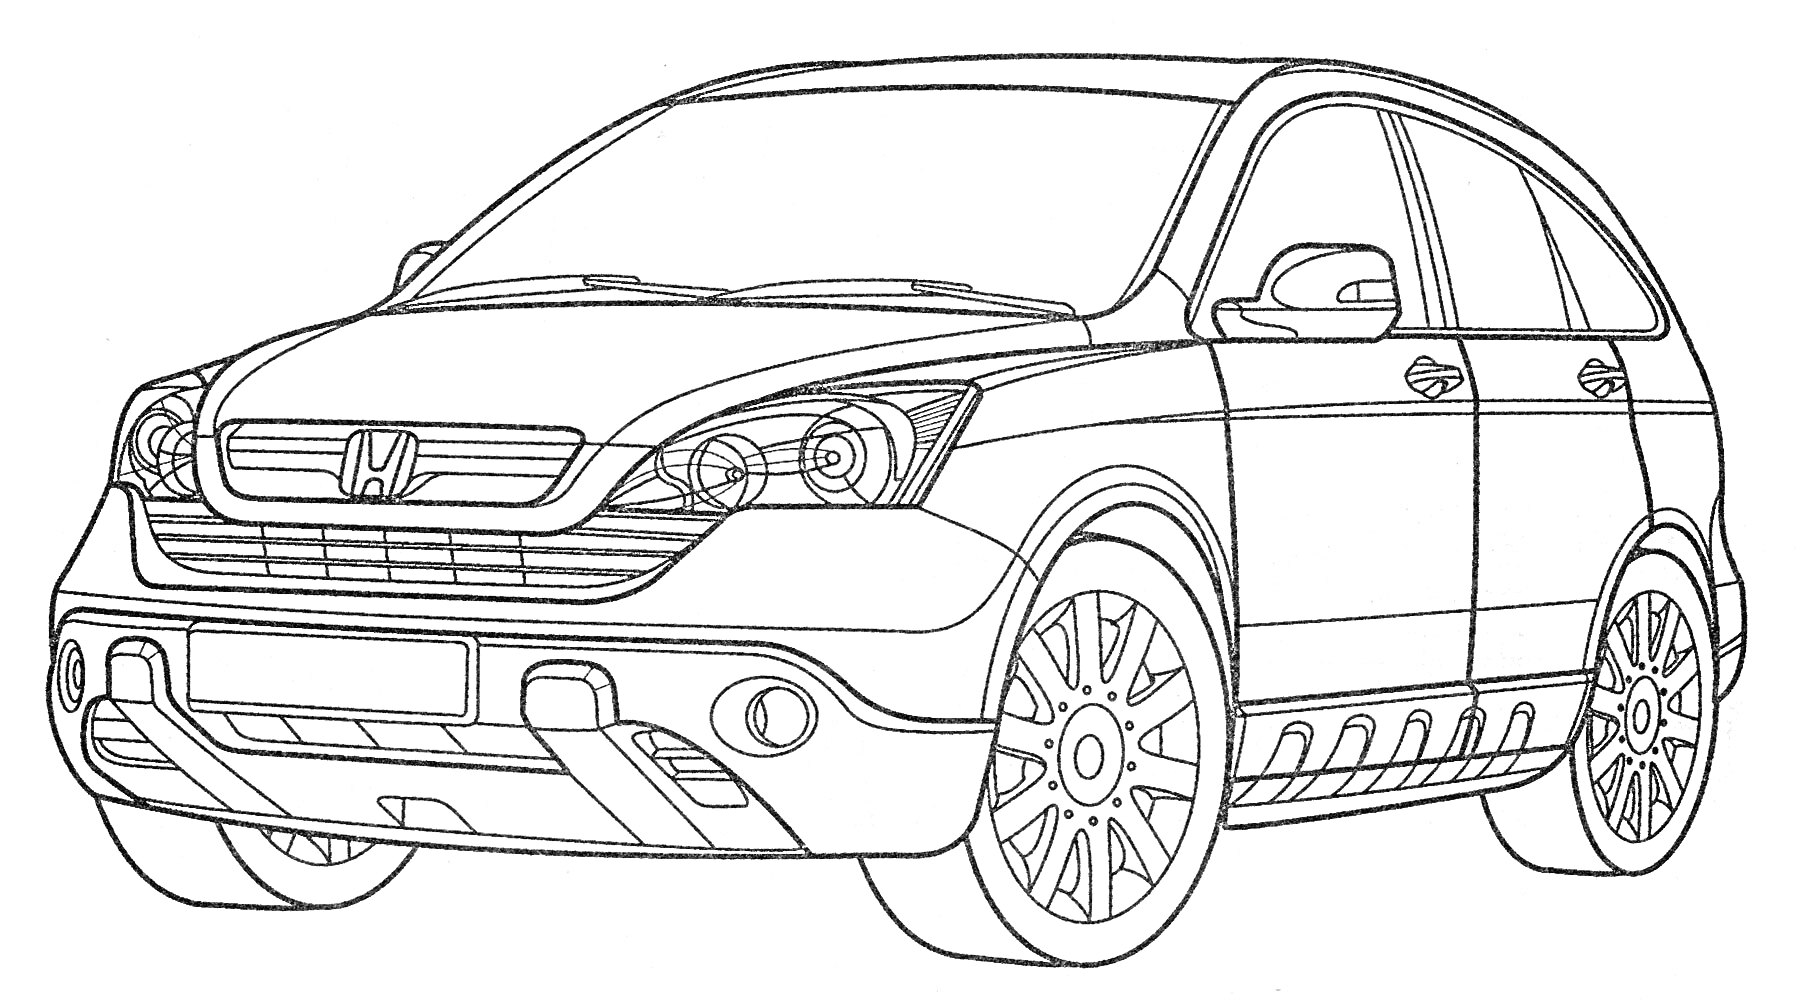 Раскраска Honda CR-V с четырьмя дверями, хромированной решеткой радиатора и большими колесными дисками